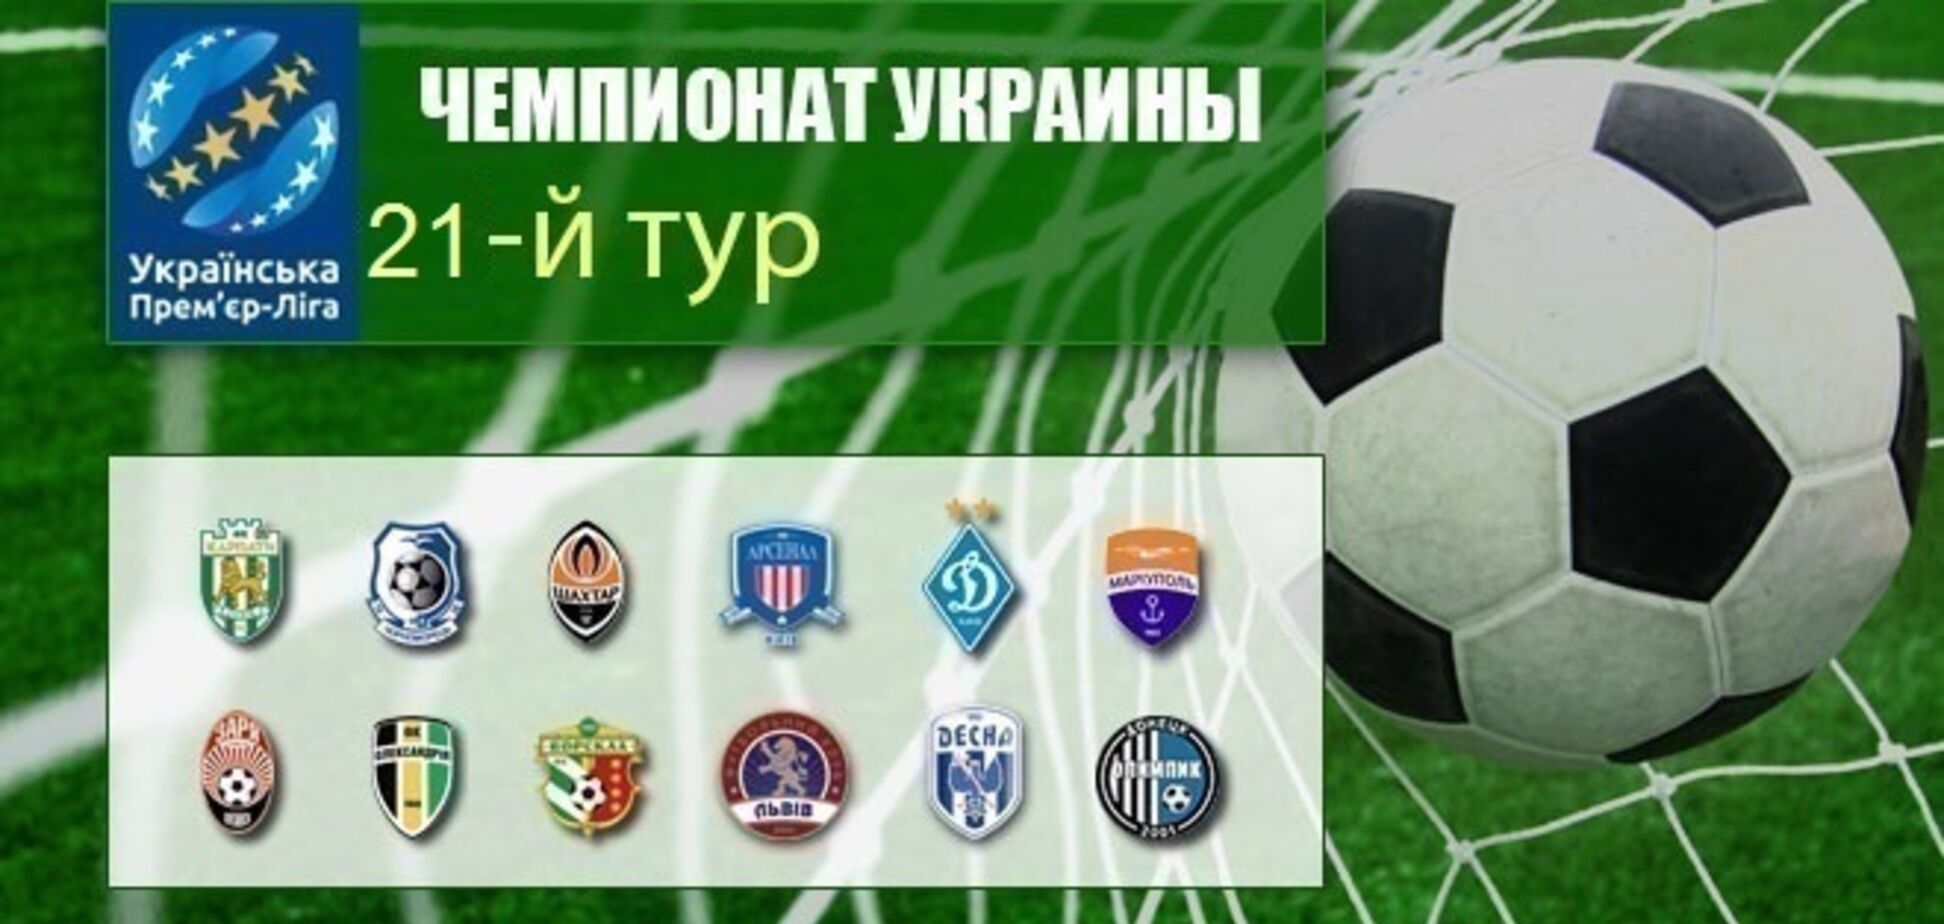 21-й тур чемпіонату України з футболу: результати, звіти, огляди